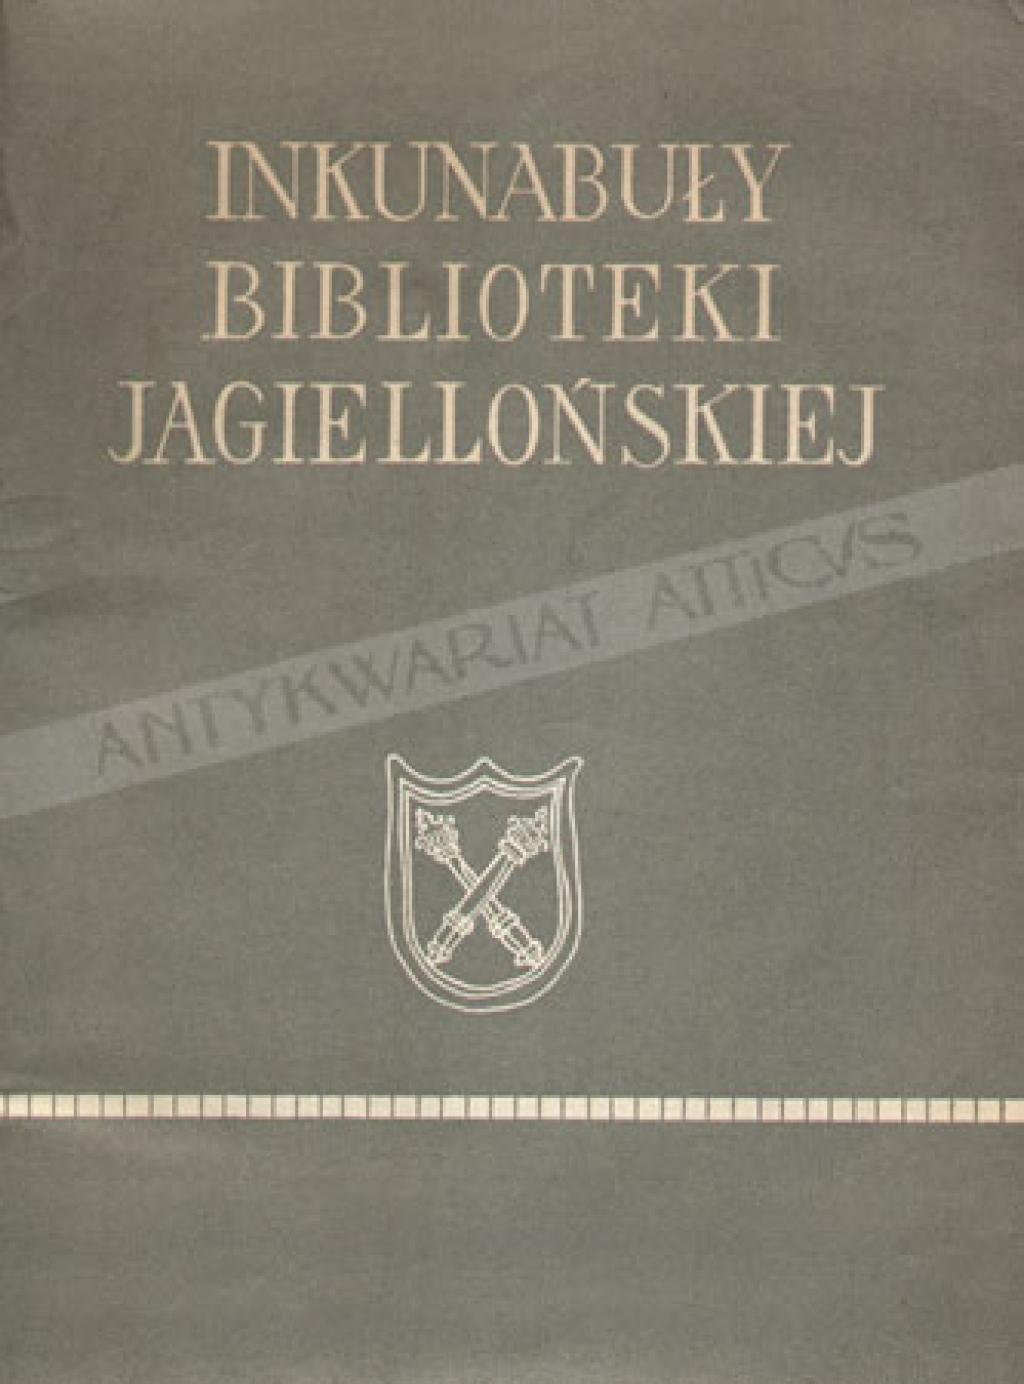 Inkunabuły Biblioteki Jagiellońskiej[Incunabula Bibliothecae Jagiellonicae Cracoviensis]